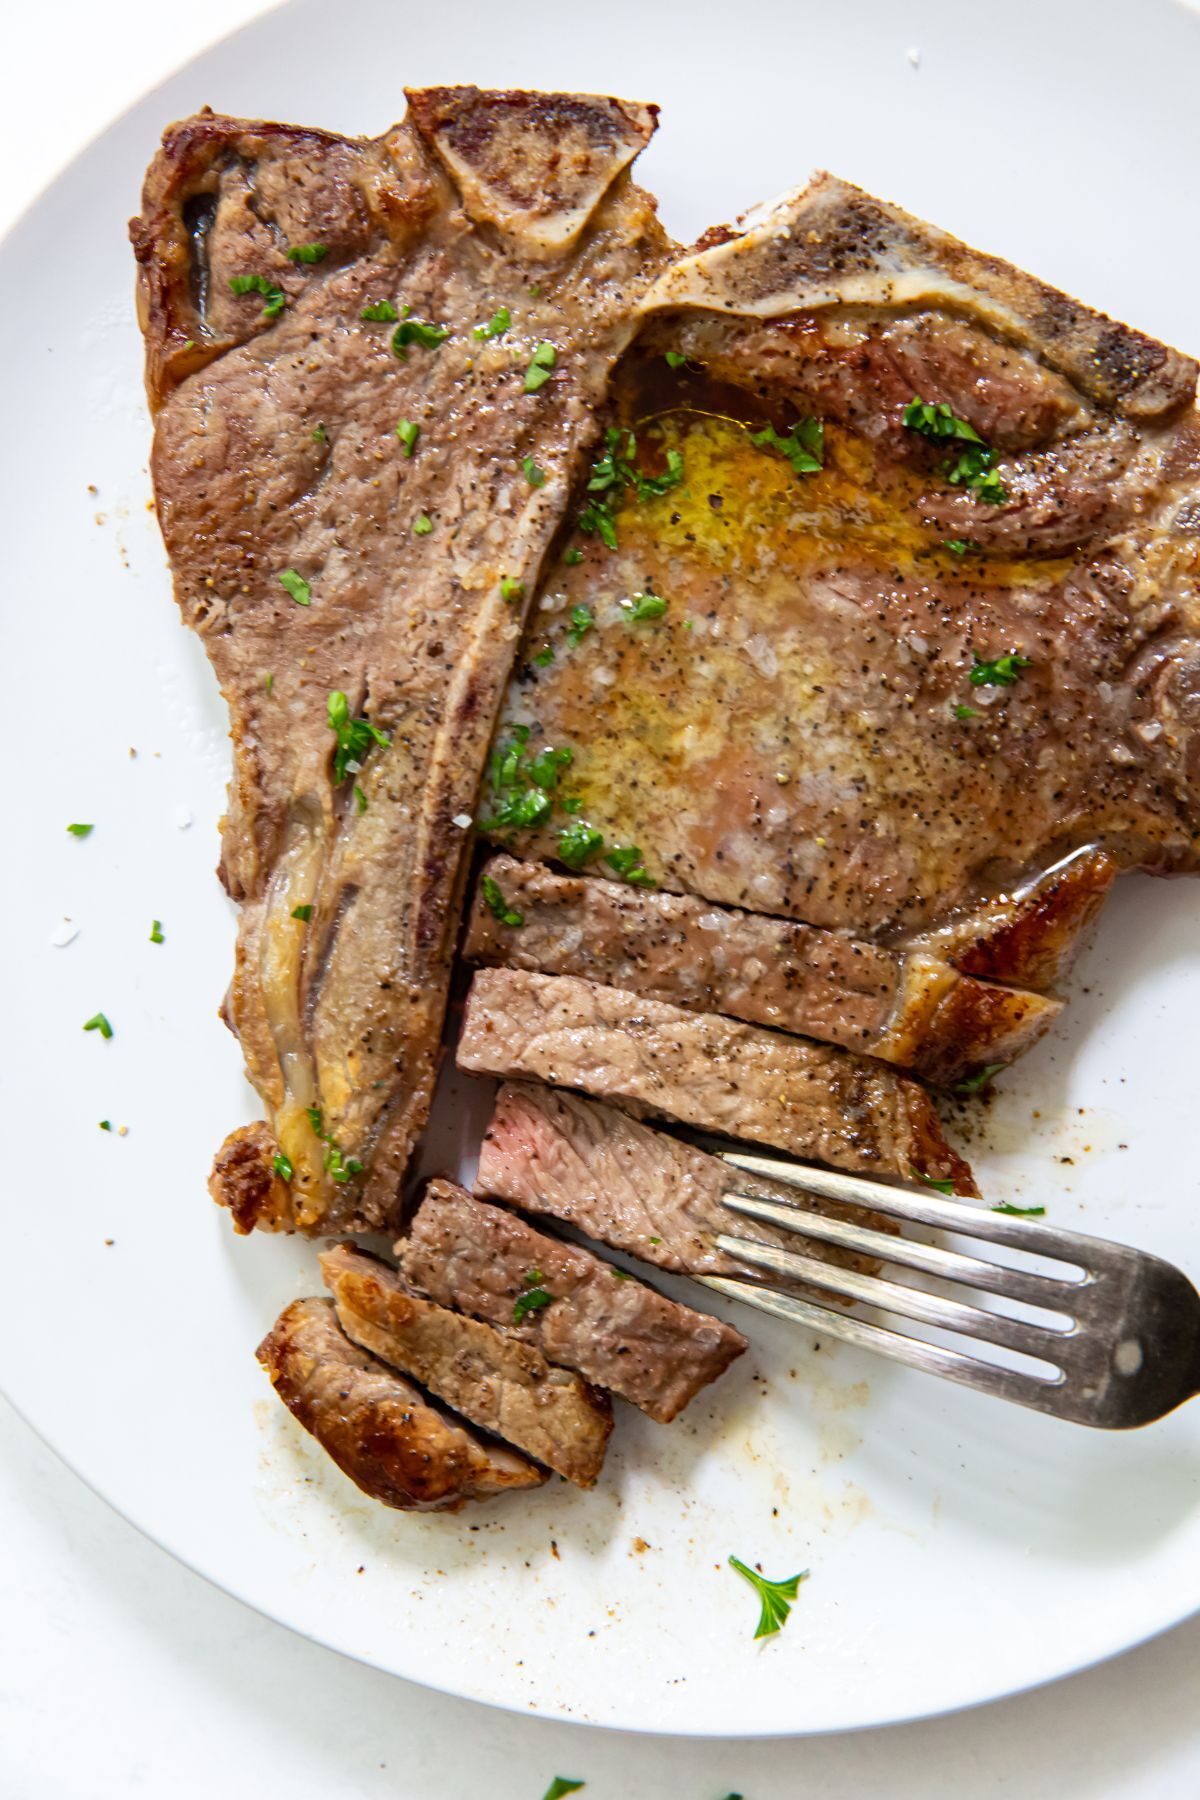 Season the T-bone steak with salt and pepper